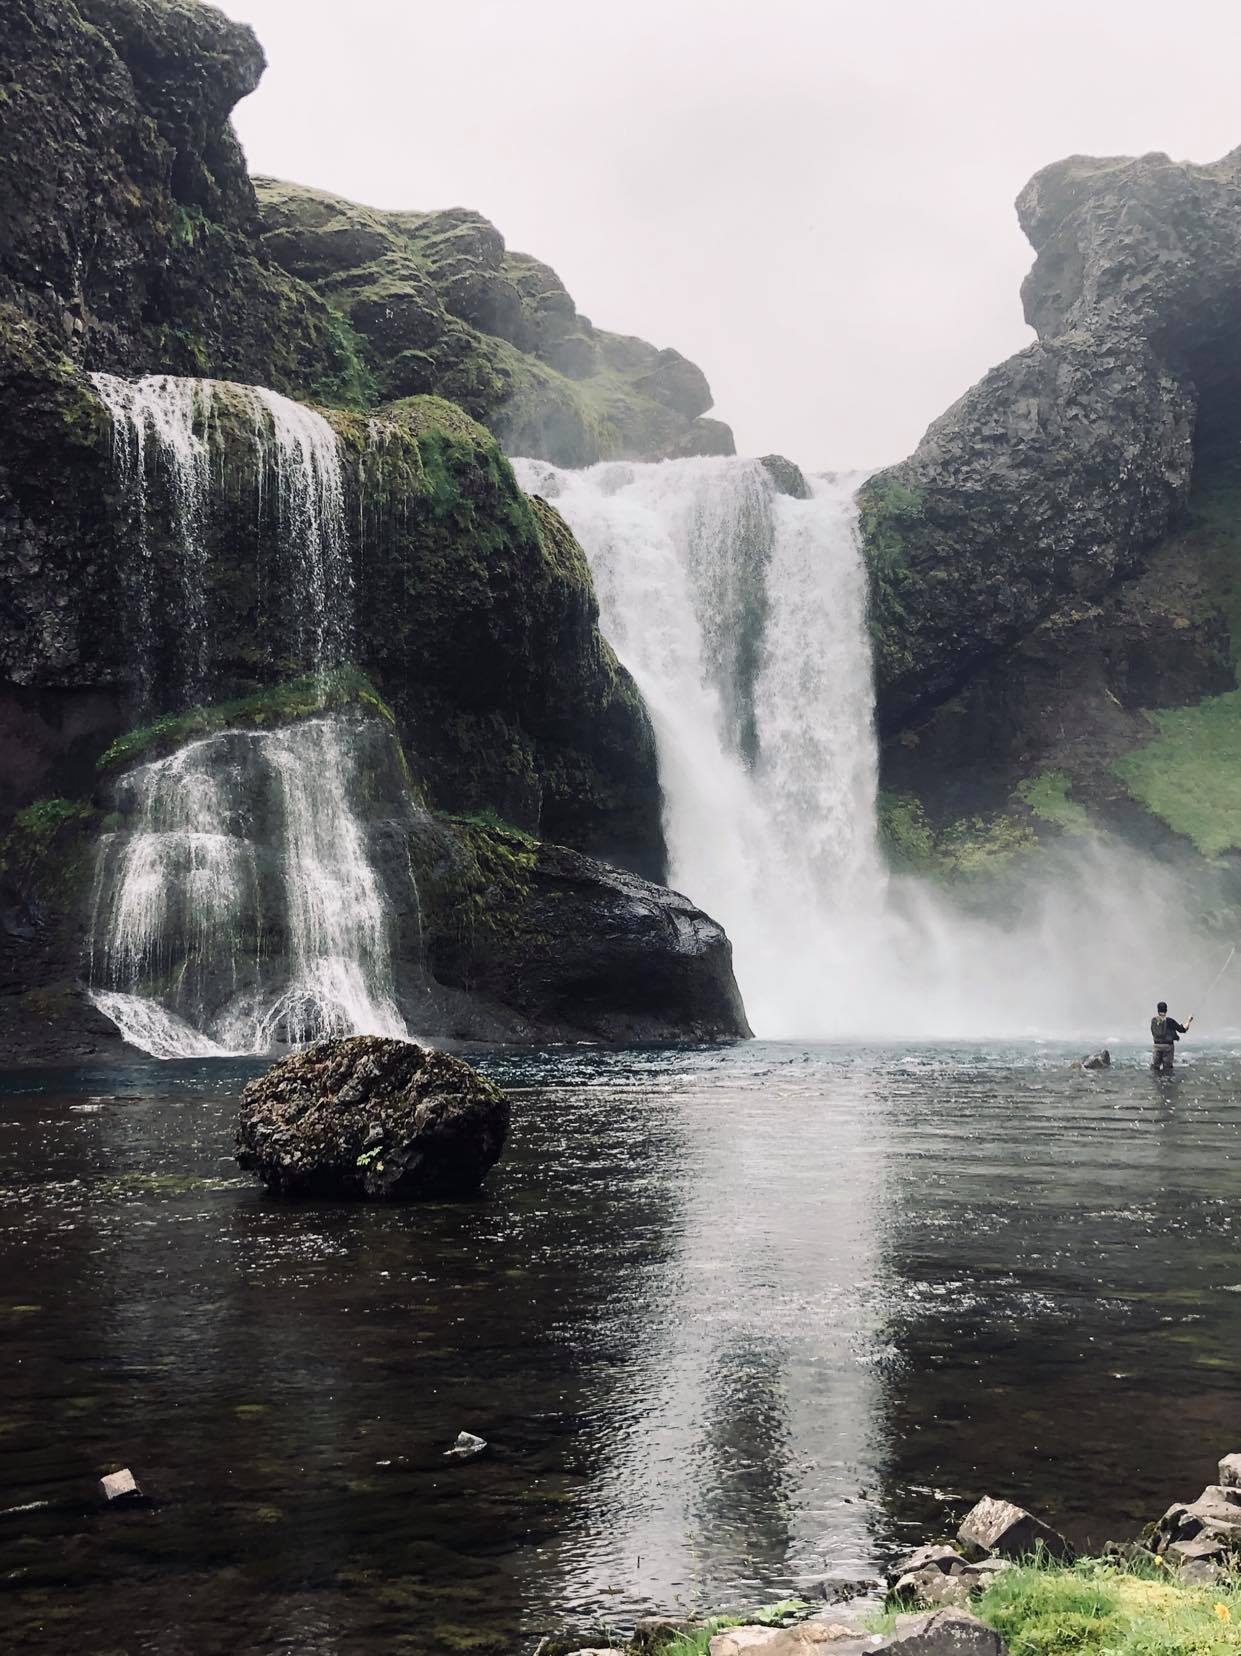 Cascade en Islande